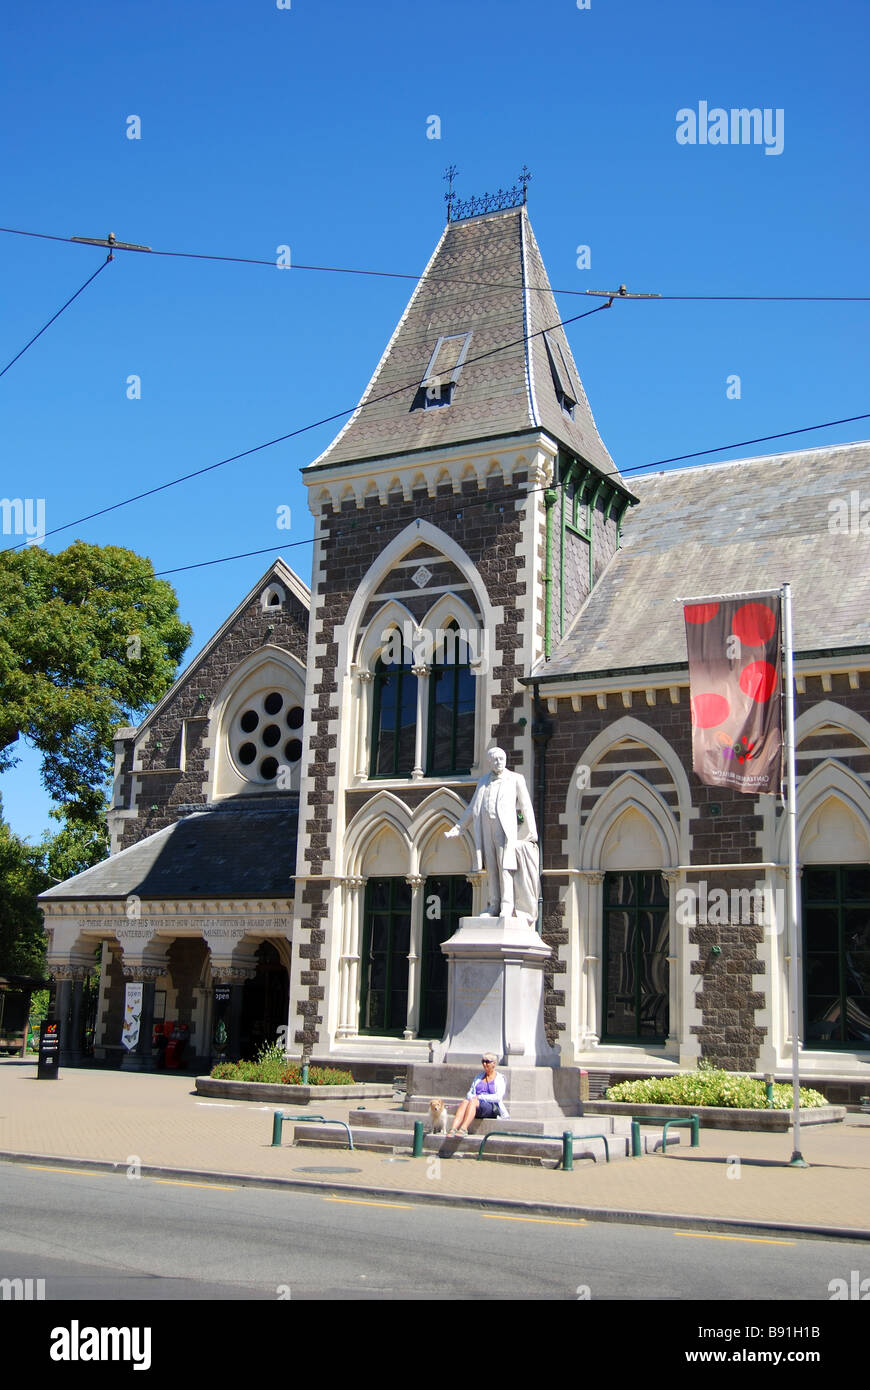 Musée de Canterbury, Rolleston Avenue, Christchurch, Canterbury, île du Sud, Nouvelle-Zélande Banque D'Images